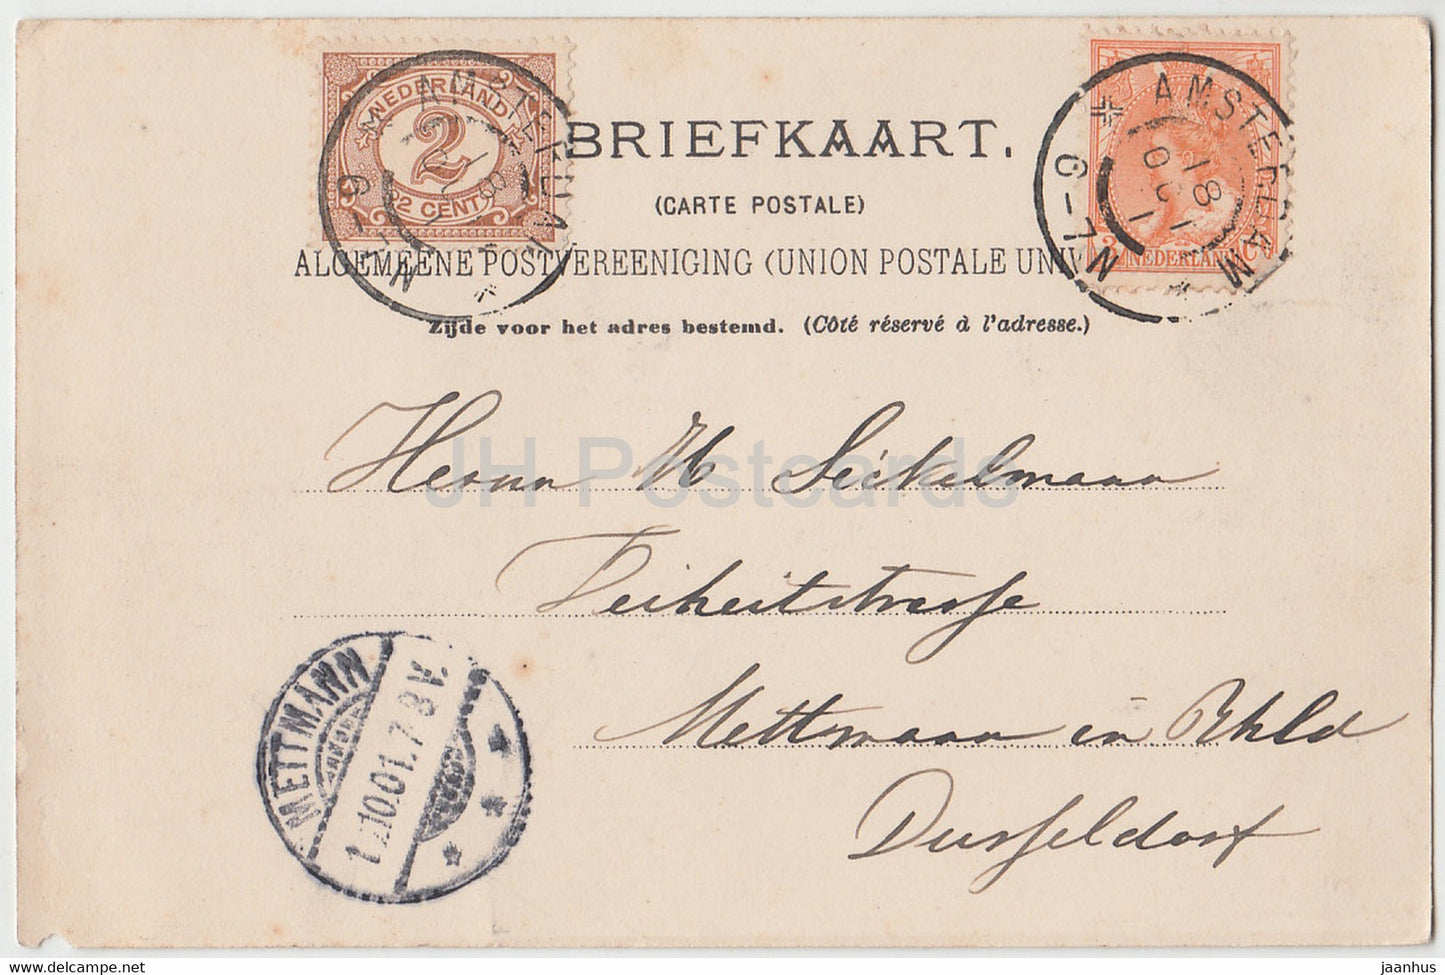 Amsterdam - Nieuwe Vaart - Windmühle - alte Postkarte - 1901 - Niederlande - gebraucht